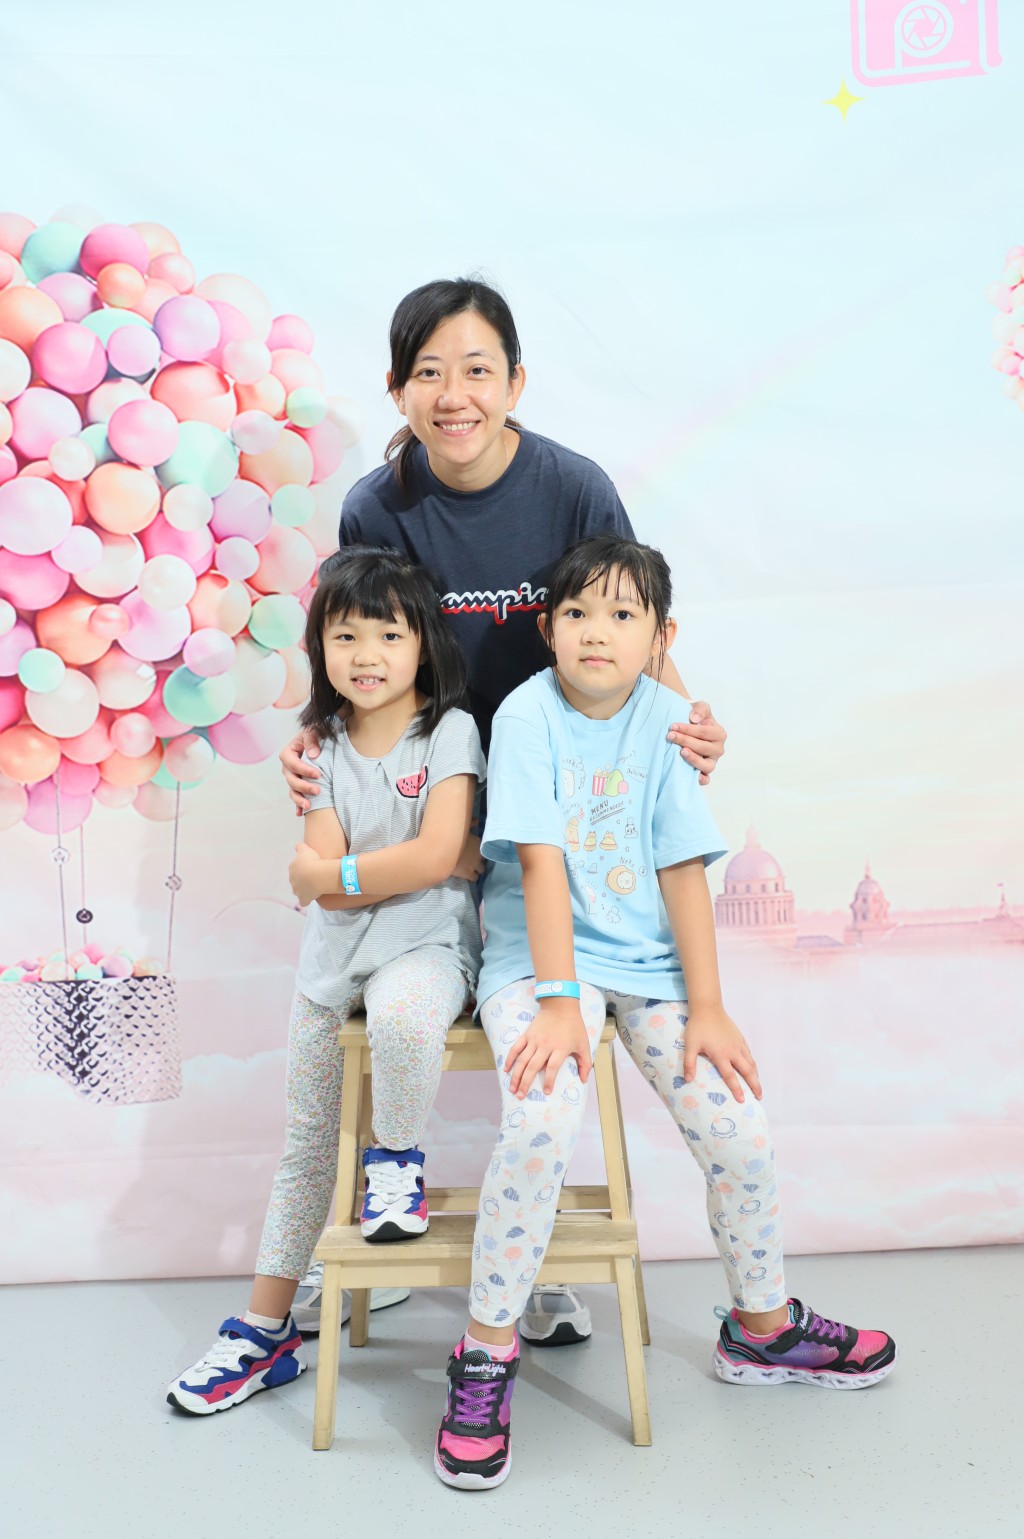 書伴我行（香港）基金會培訓導師丘成瑤與女兒合照，她分享共讀的目的是建立優質的親子時間，而提升個人能力，如認字能力則屬課業範疇。